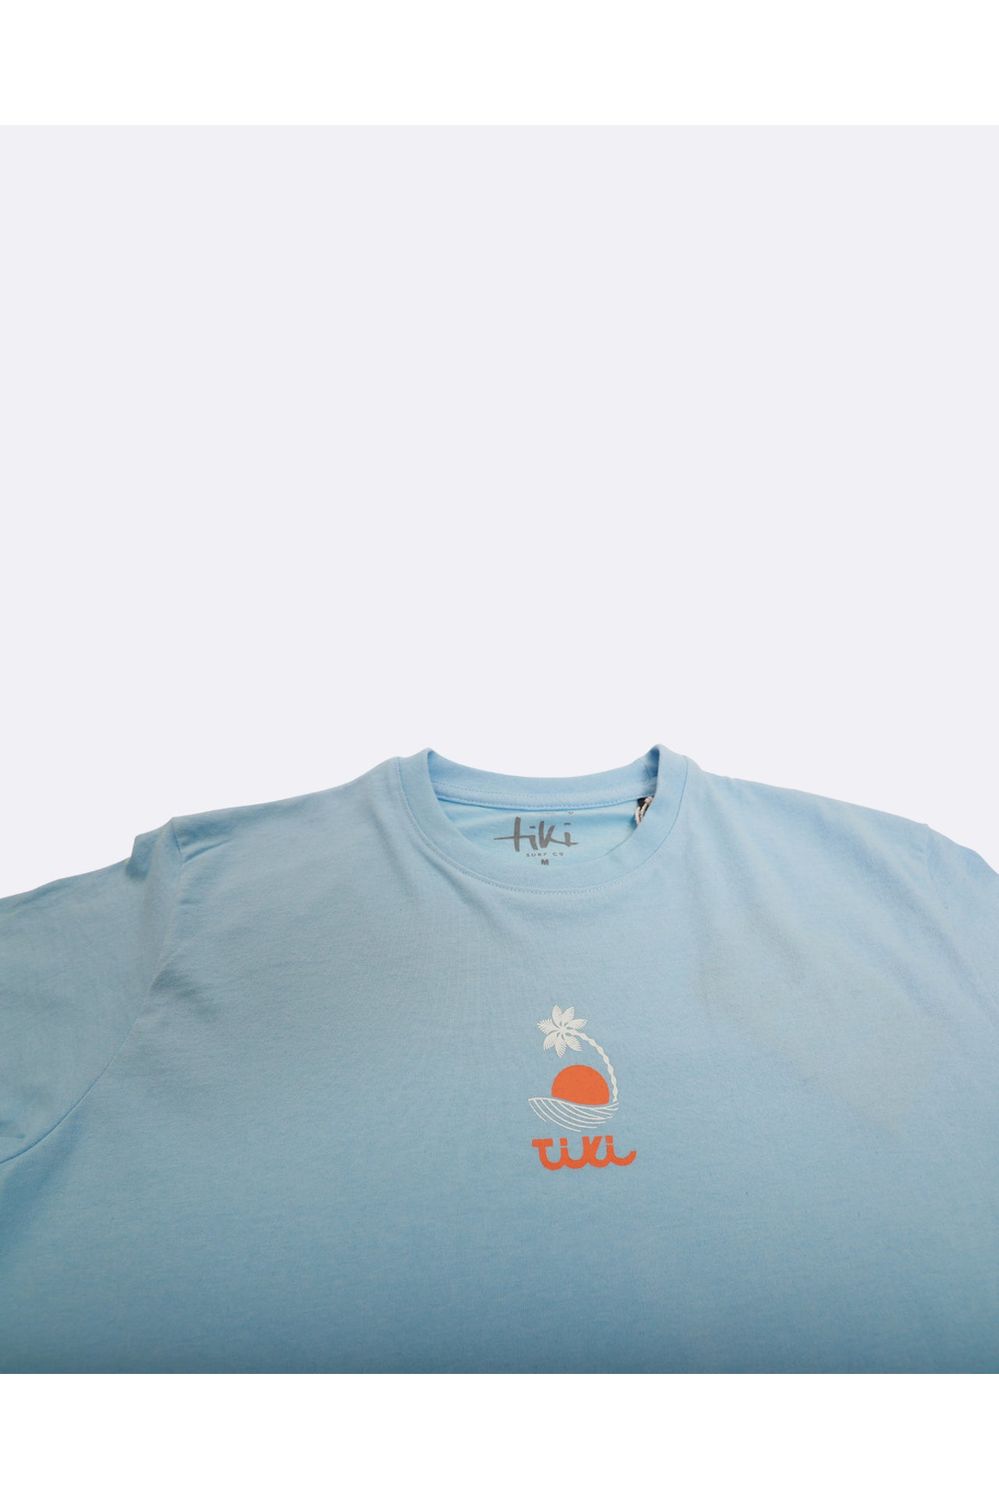 Tiki Cloud Nine Short Sleeve T-Shirt